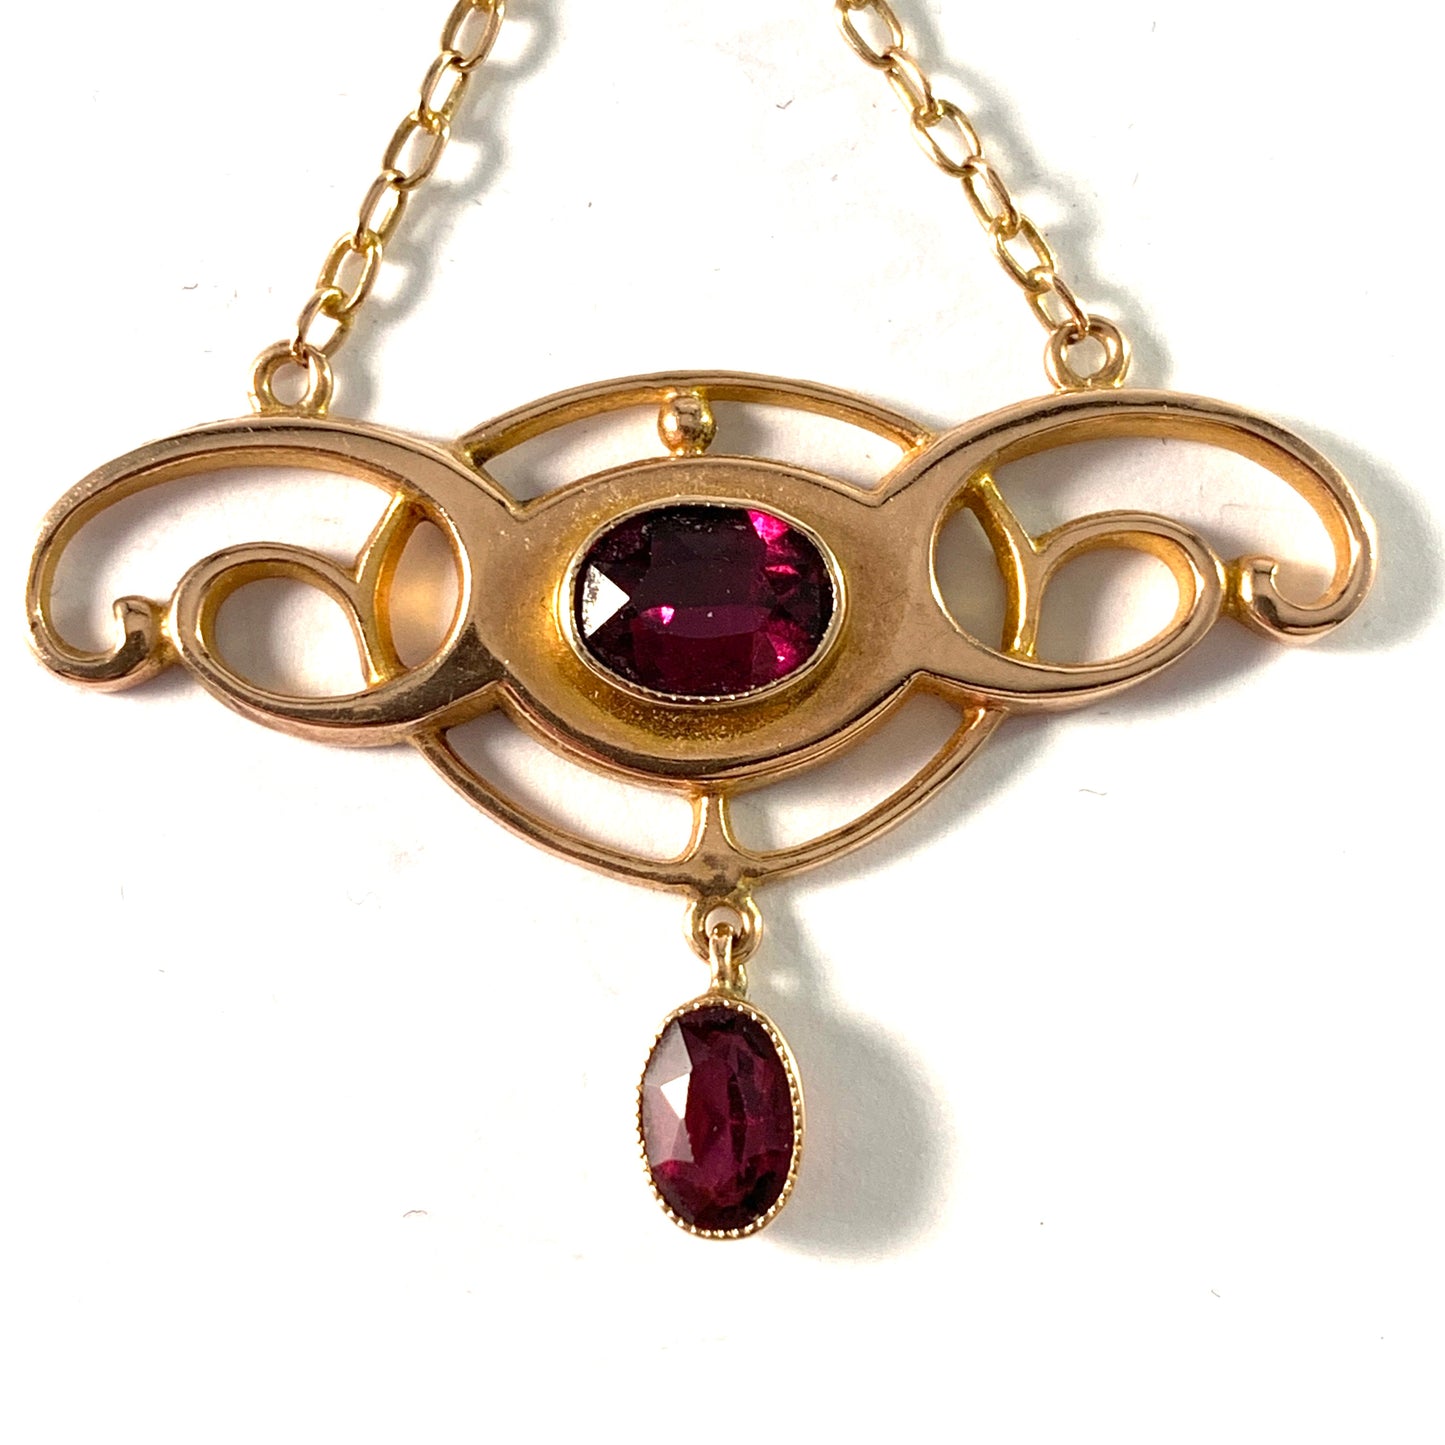 Barnet Henry Joseph c year 1900 Antique Jugendstil 9k Gold Paste Necklace.